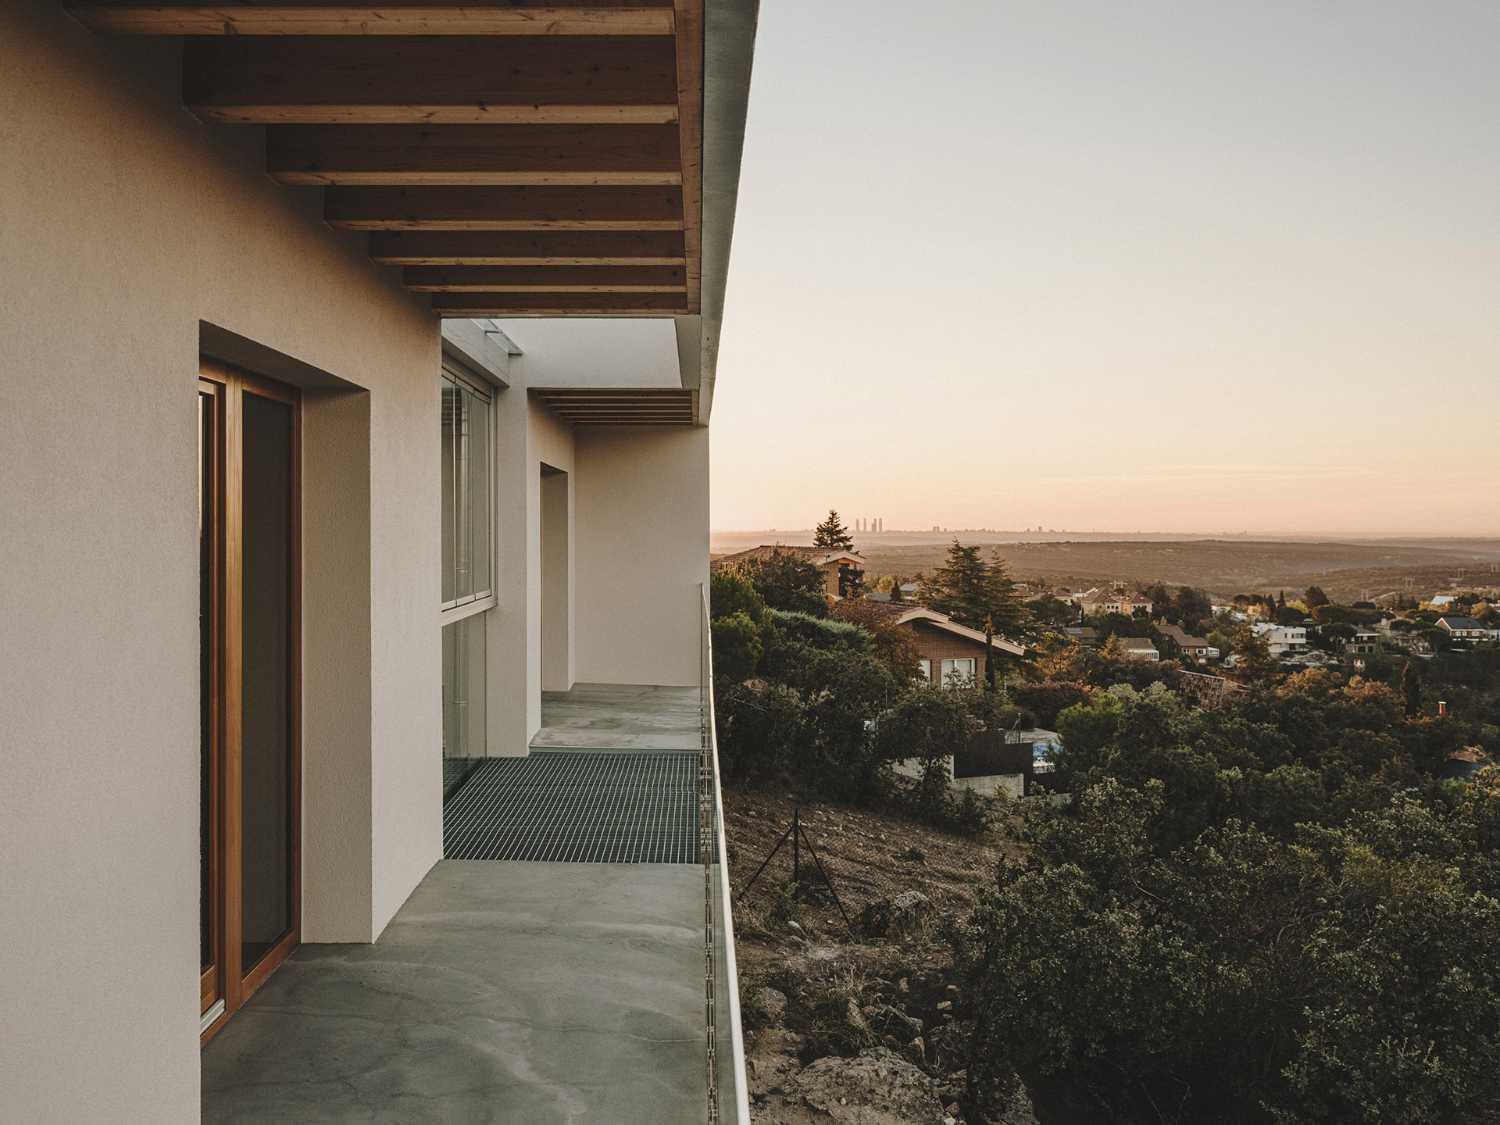 Une maison passive à Monte El Pardo. Stratégies bioclimatiques avec des vues à couper le souffle